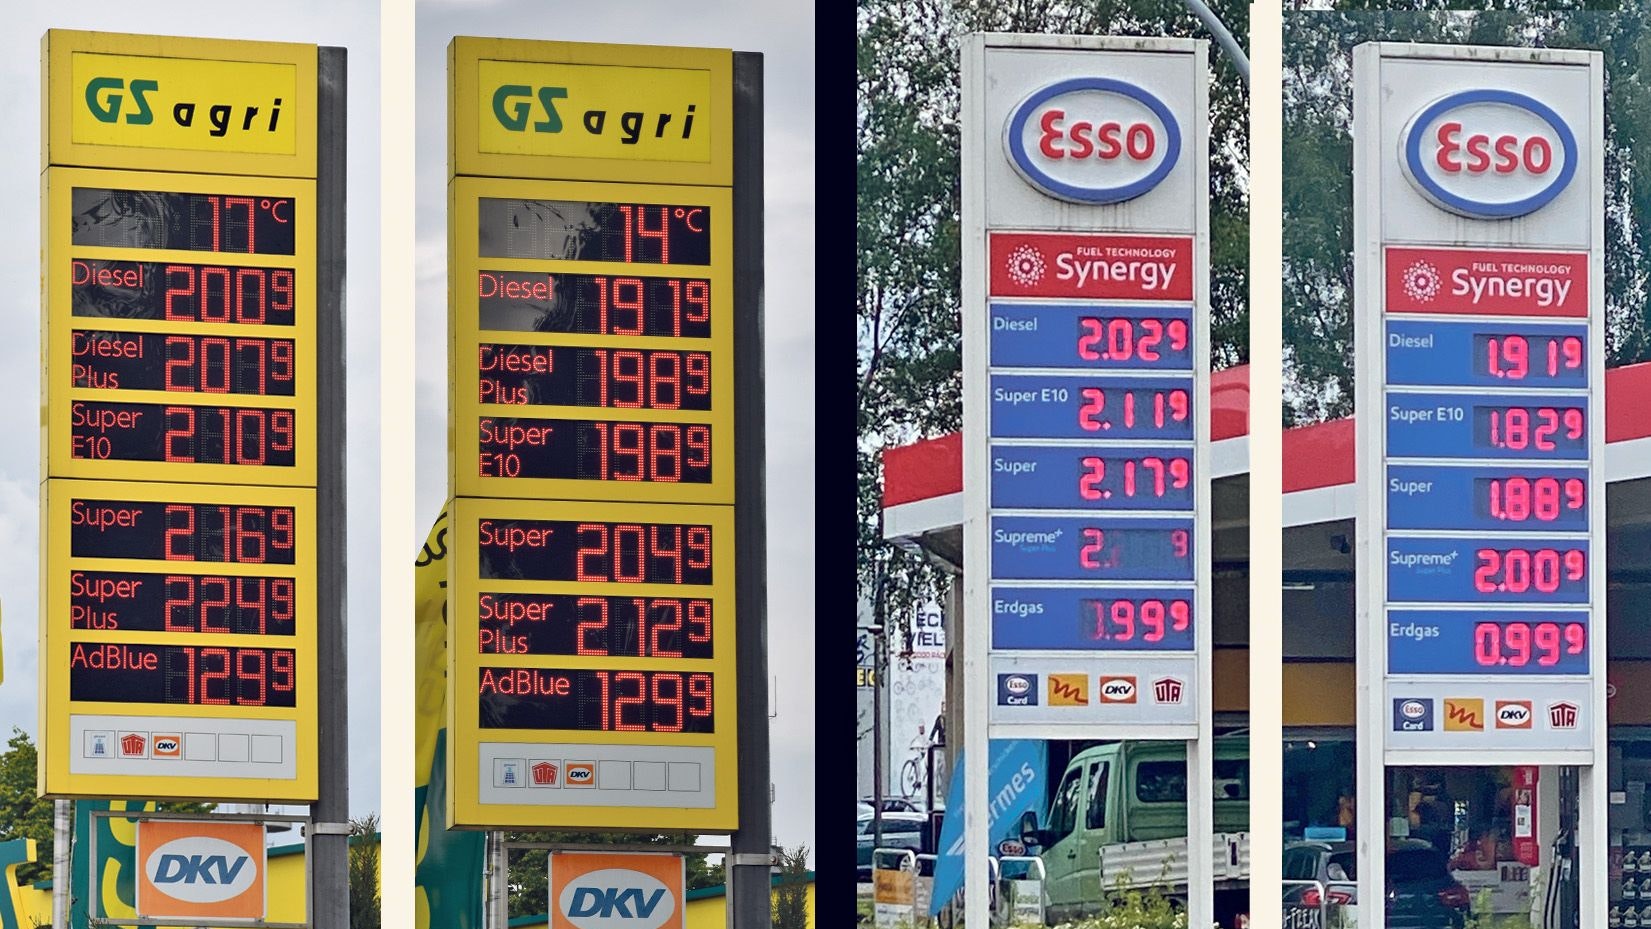 Die Preise an Tankstellen in Cloppenburg (GS) und Friesoythe (Esso) um die Mittagszeit am 31. Mai (linke Säule), und am 1. Juni (rechts).&nbsp; Montage/Fotos: von der Heide / Kühn / Wimberg